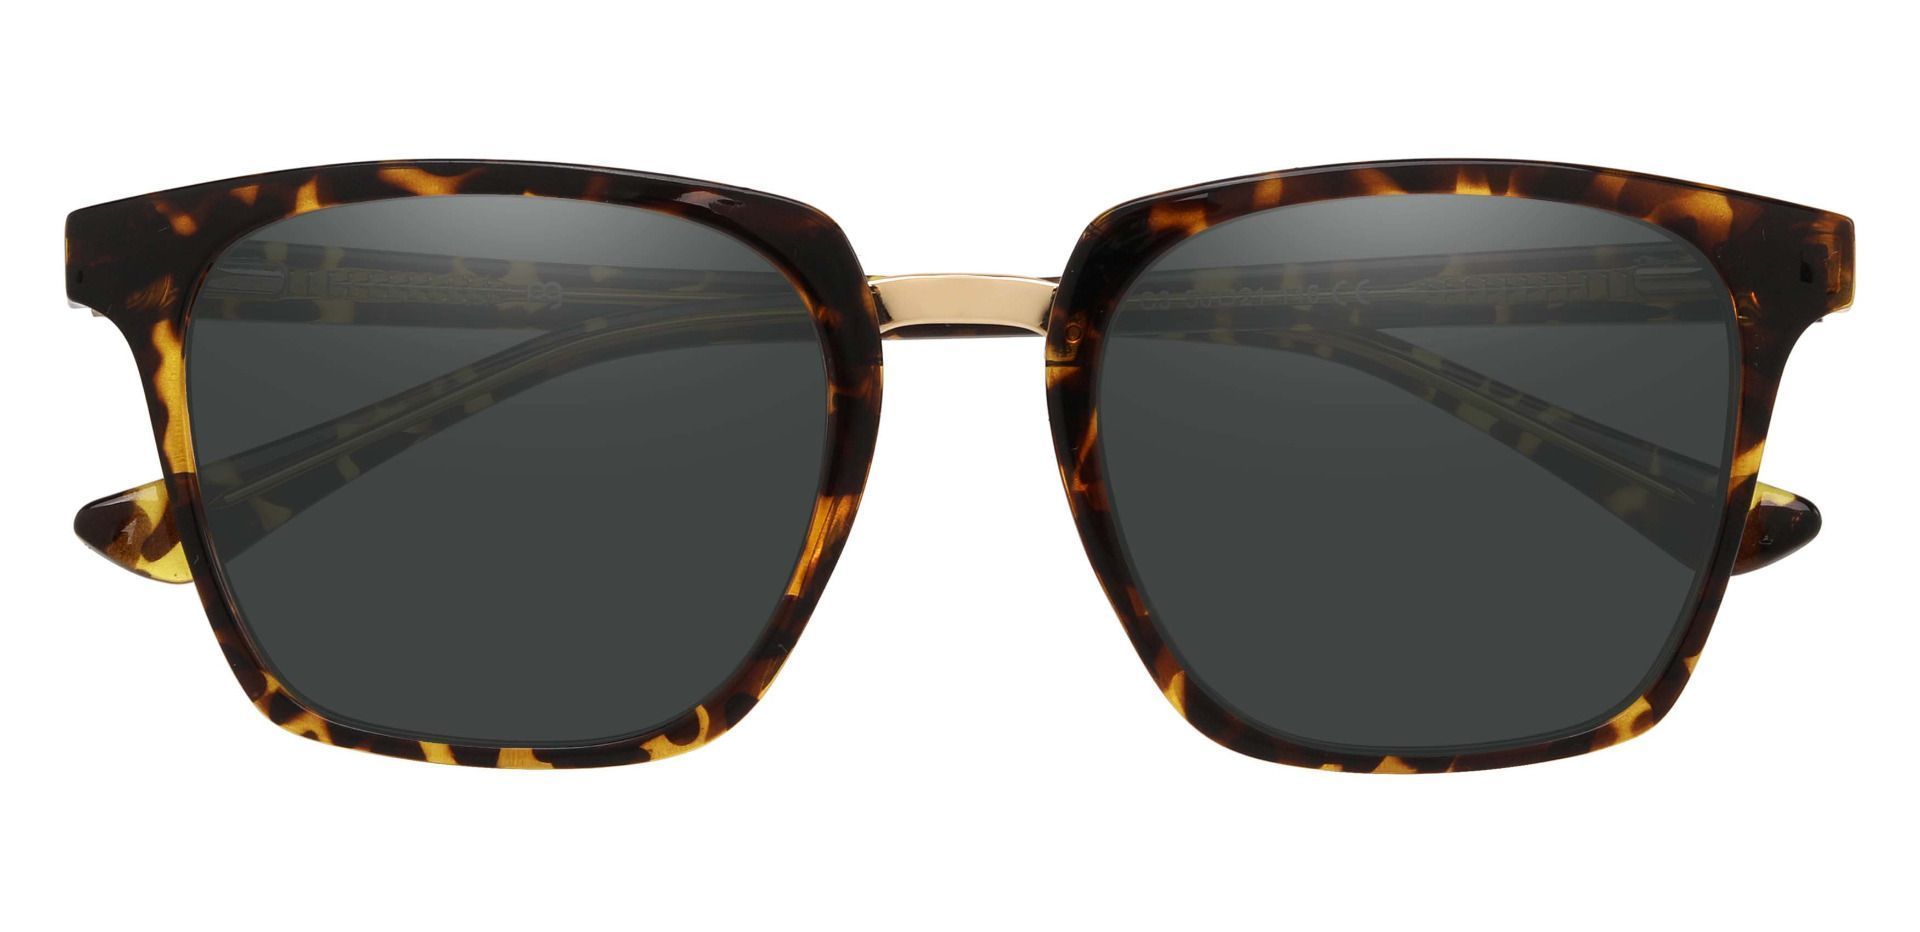 Delta Square Reading Sunglasses - Tortoise Frame With Gray Lenses